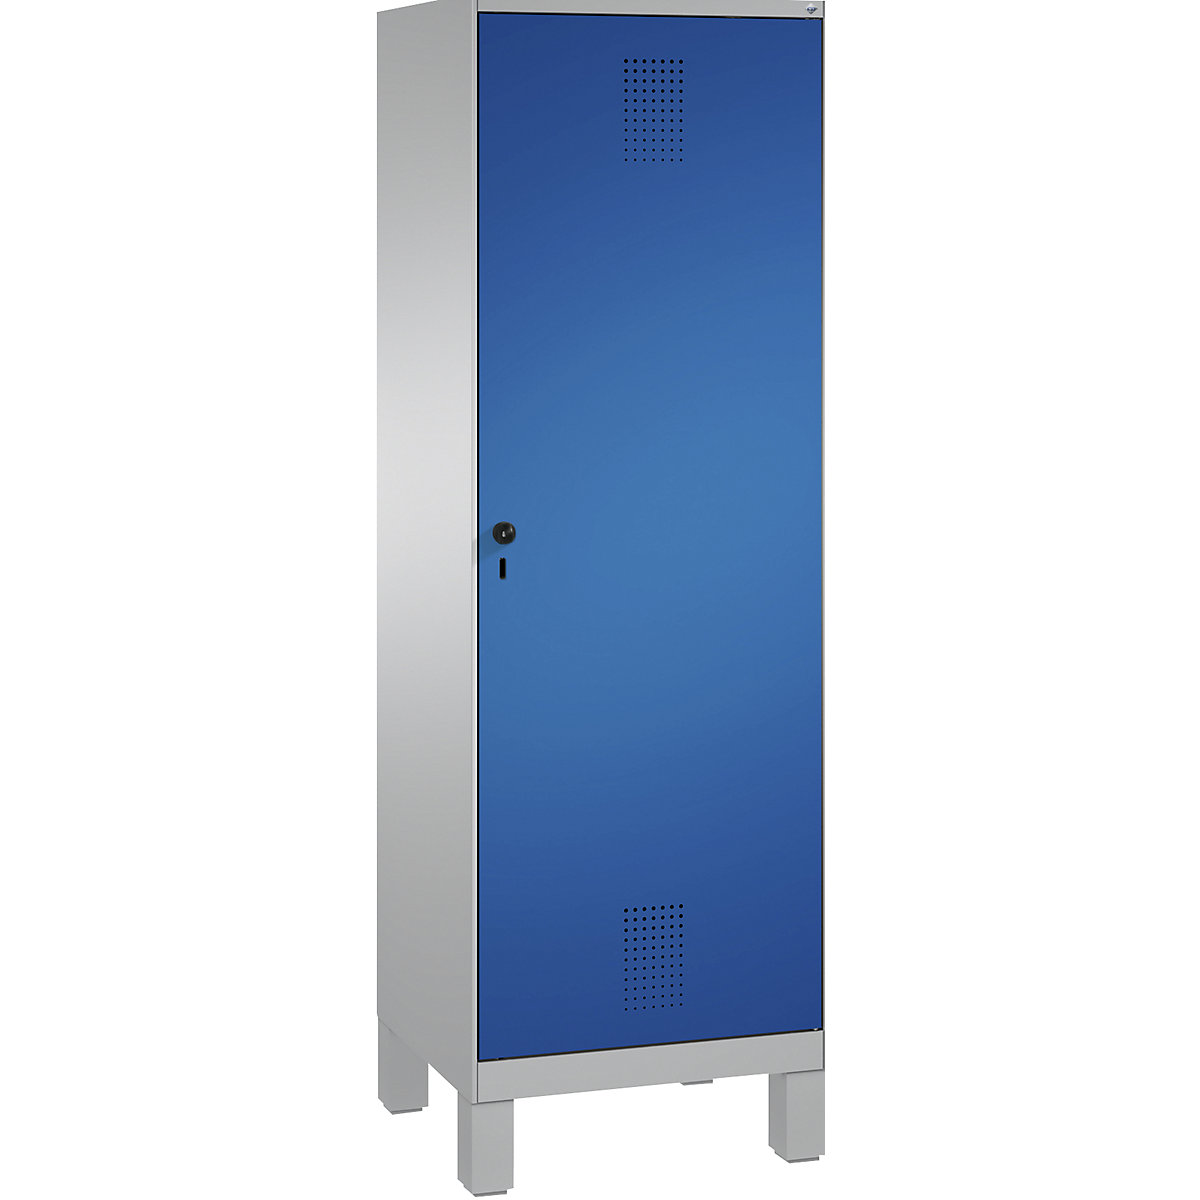 Šatní skříň s nohami EVOLO s dveřmi přes 2 oddíly – C+P, 2 oddíly, 1 dveře, šířka oddílu 300 mm, bílý hliník / enciánová modrá-7